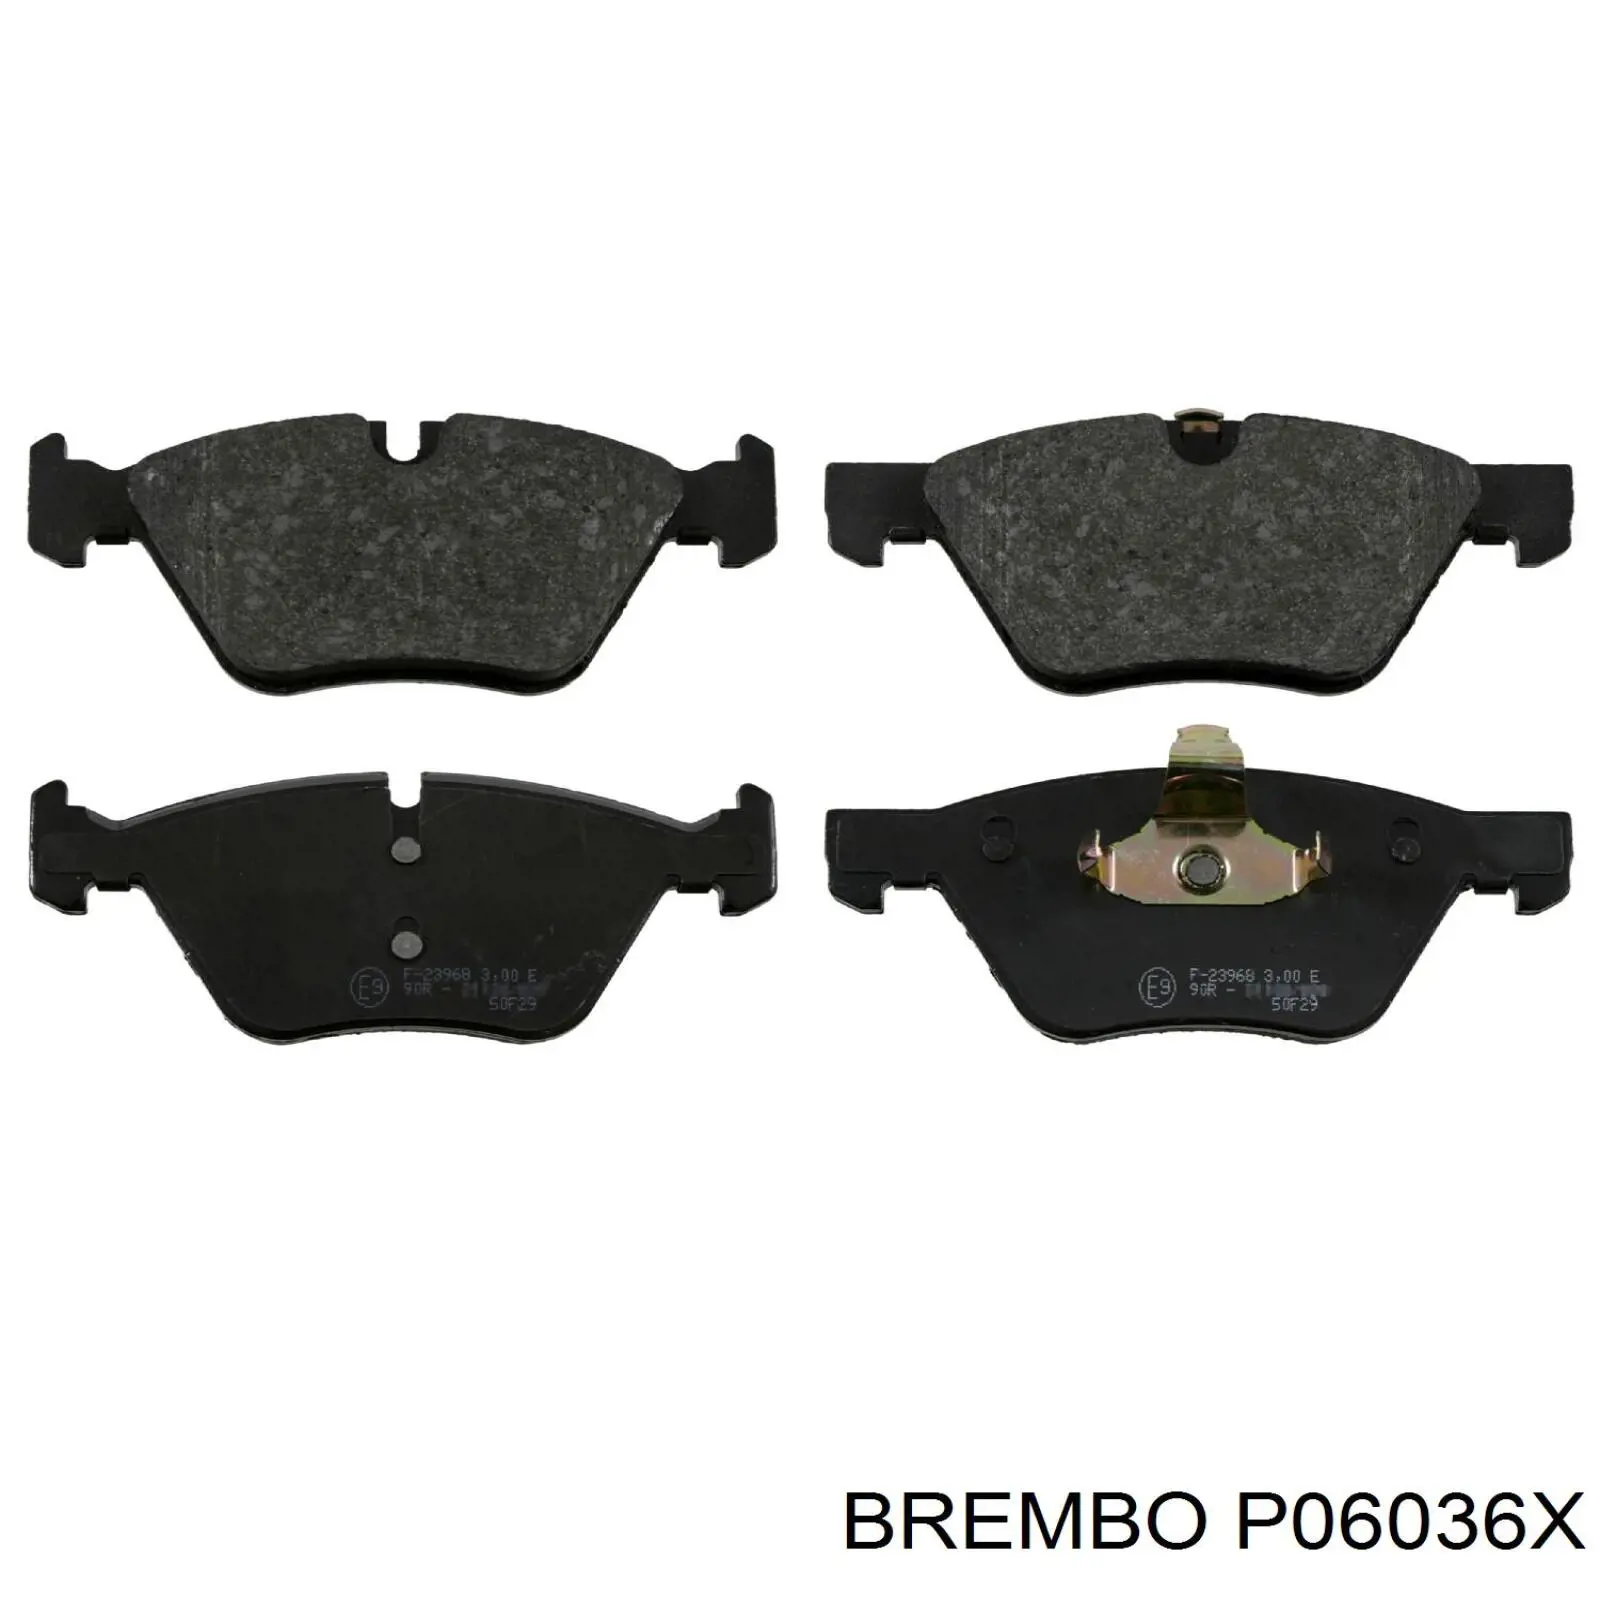 P06036X Brembo 